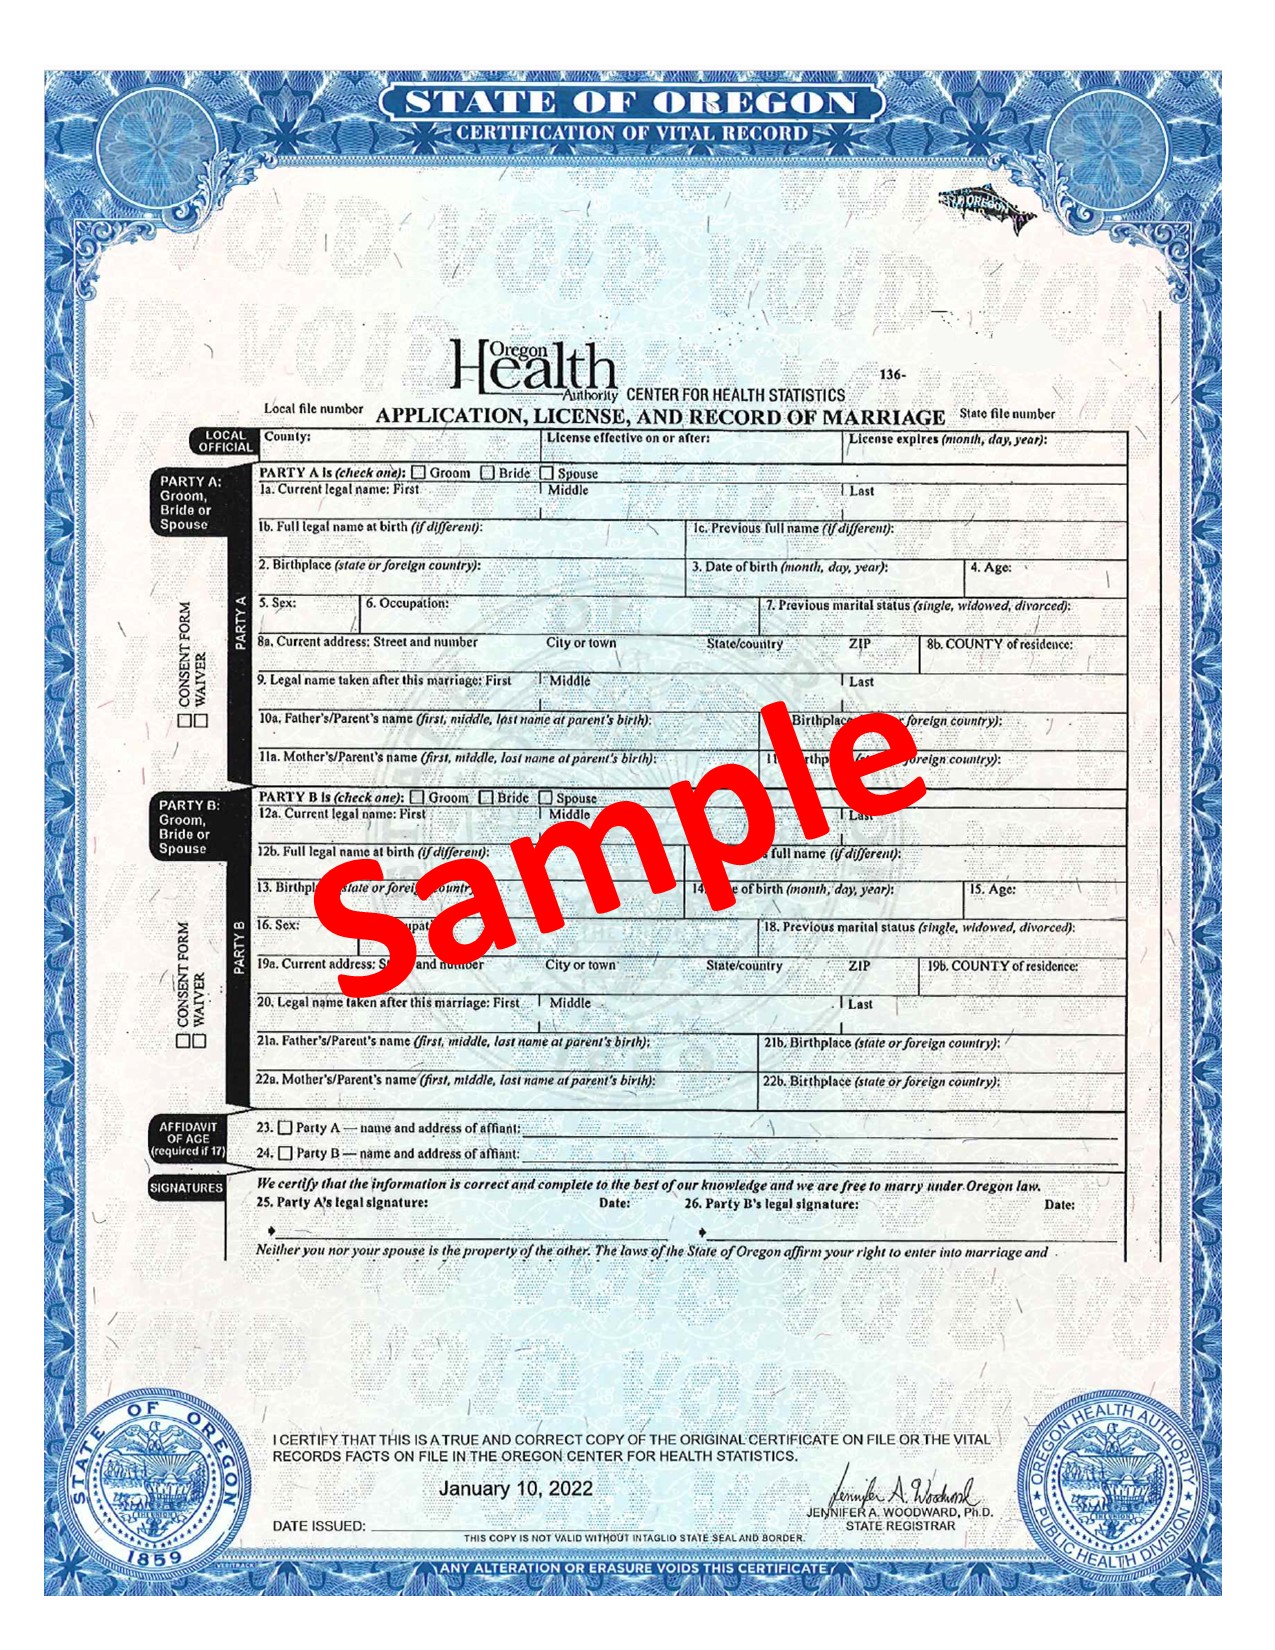 Marriage Certificate (Blank) Sample Image.jpg